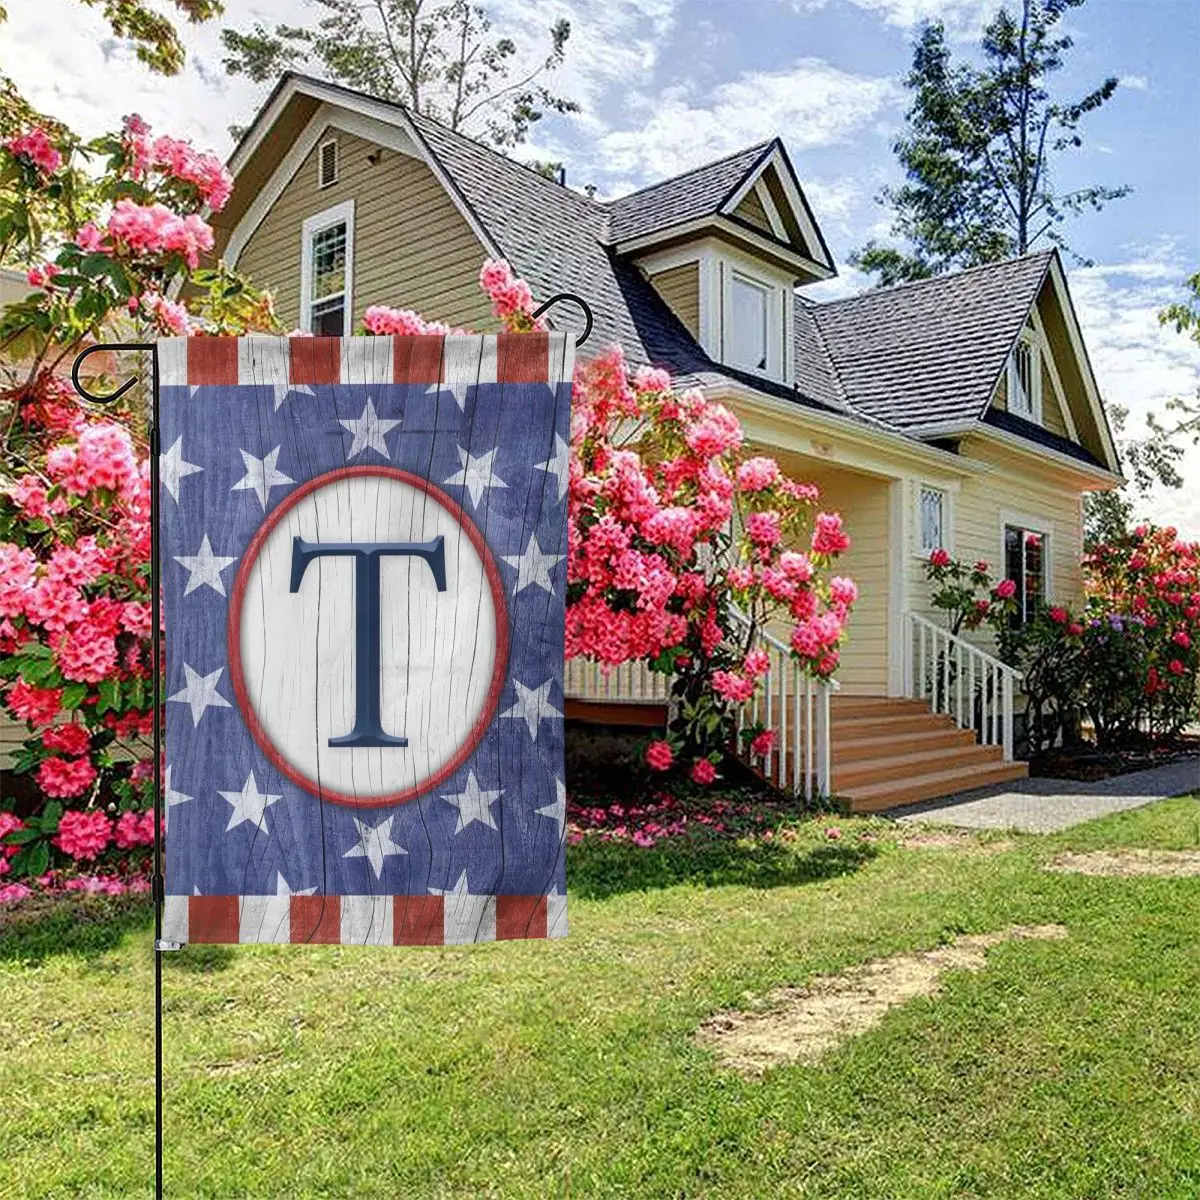 

Патриотическая монограмма «Америка навсегда» 4 июля, флаг для сада, буква «День независимости США», декоративный уличный двор, флаг США